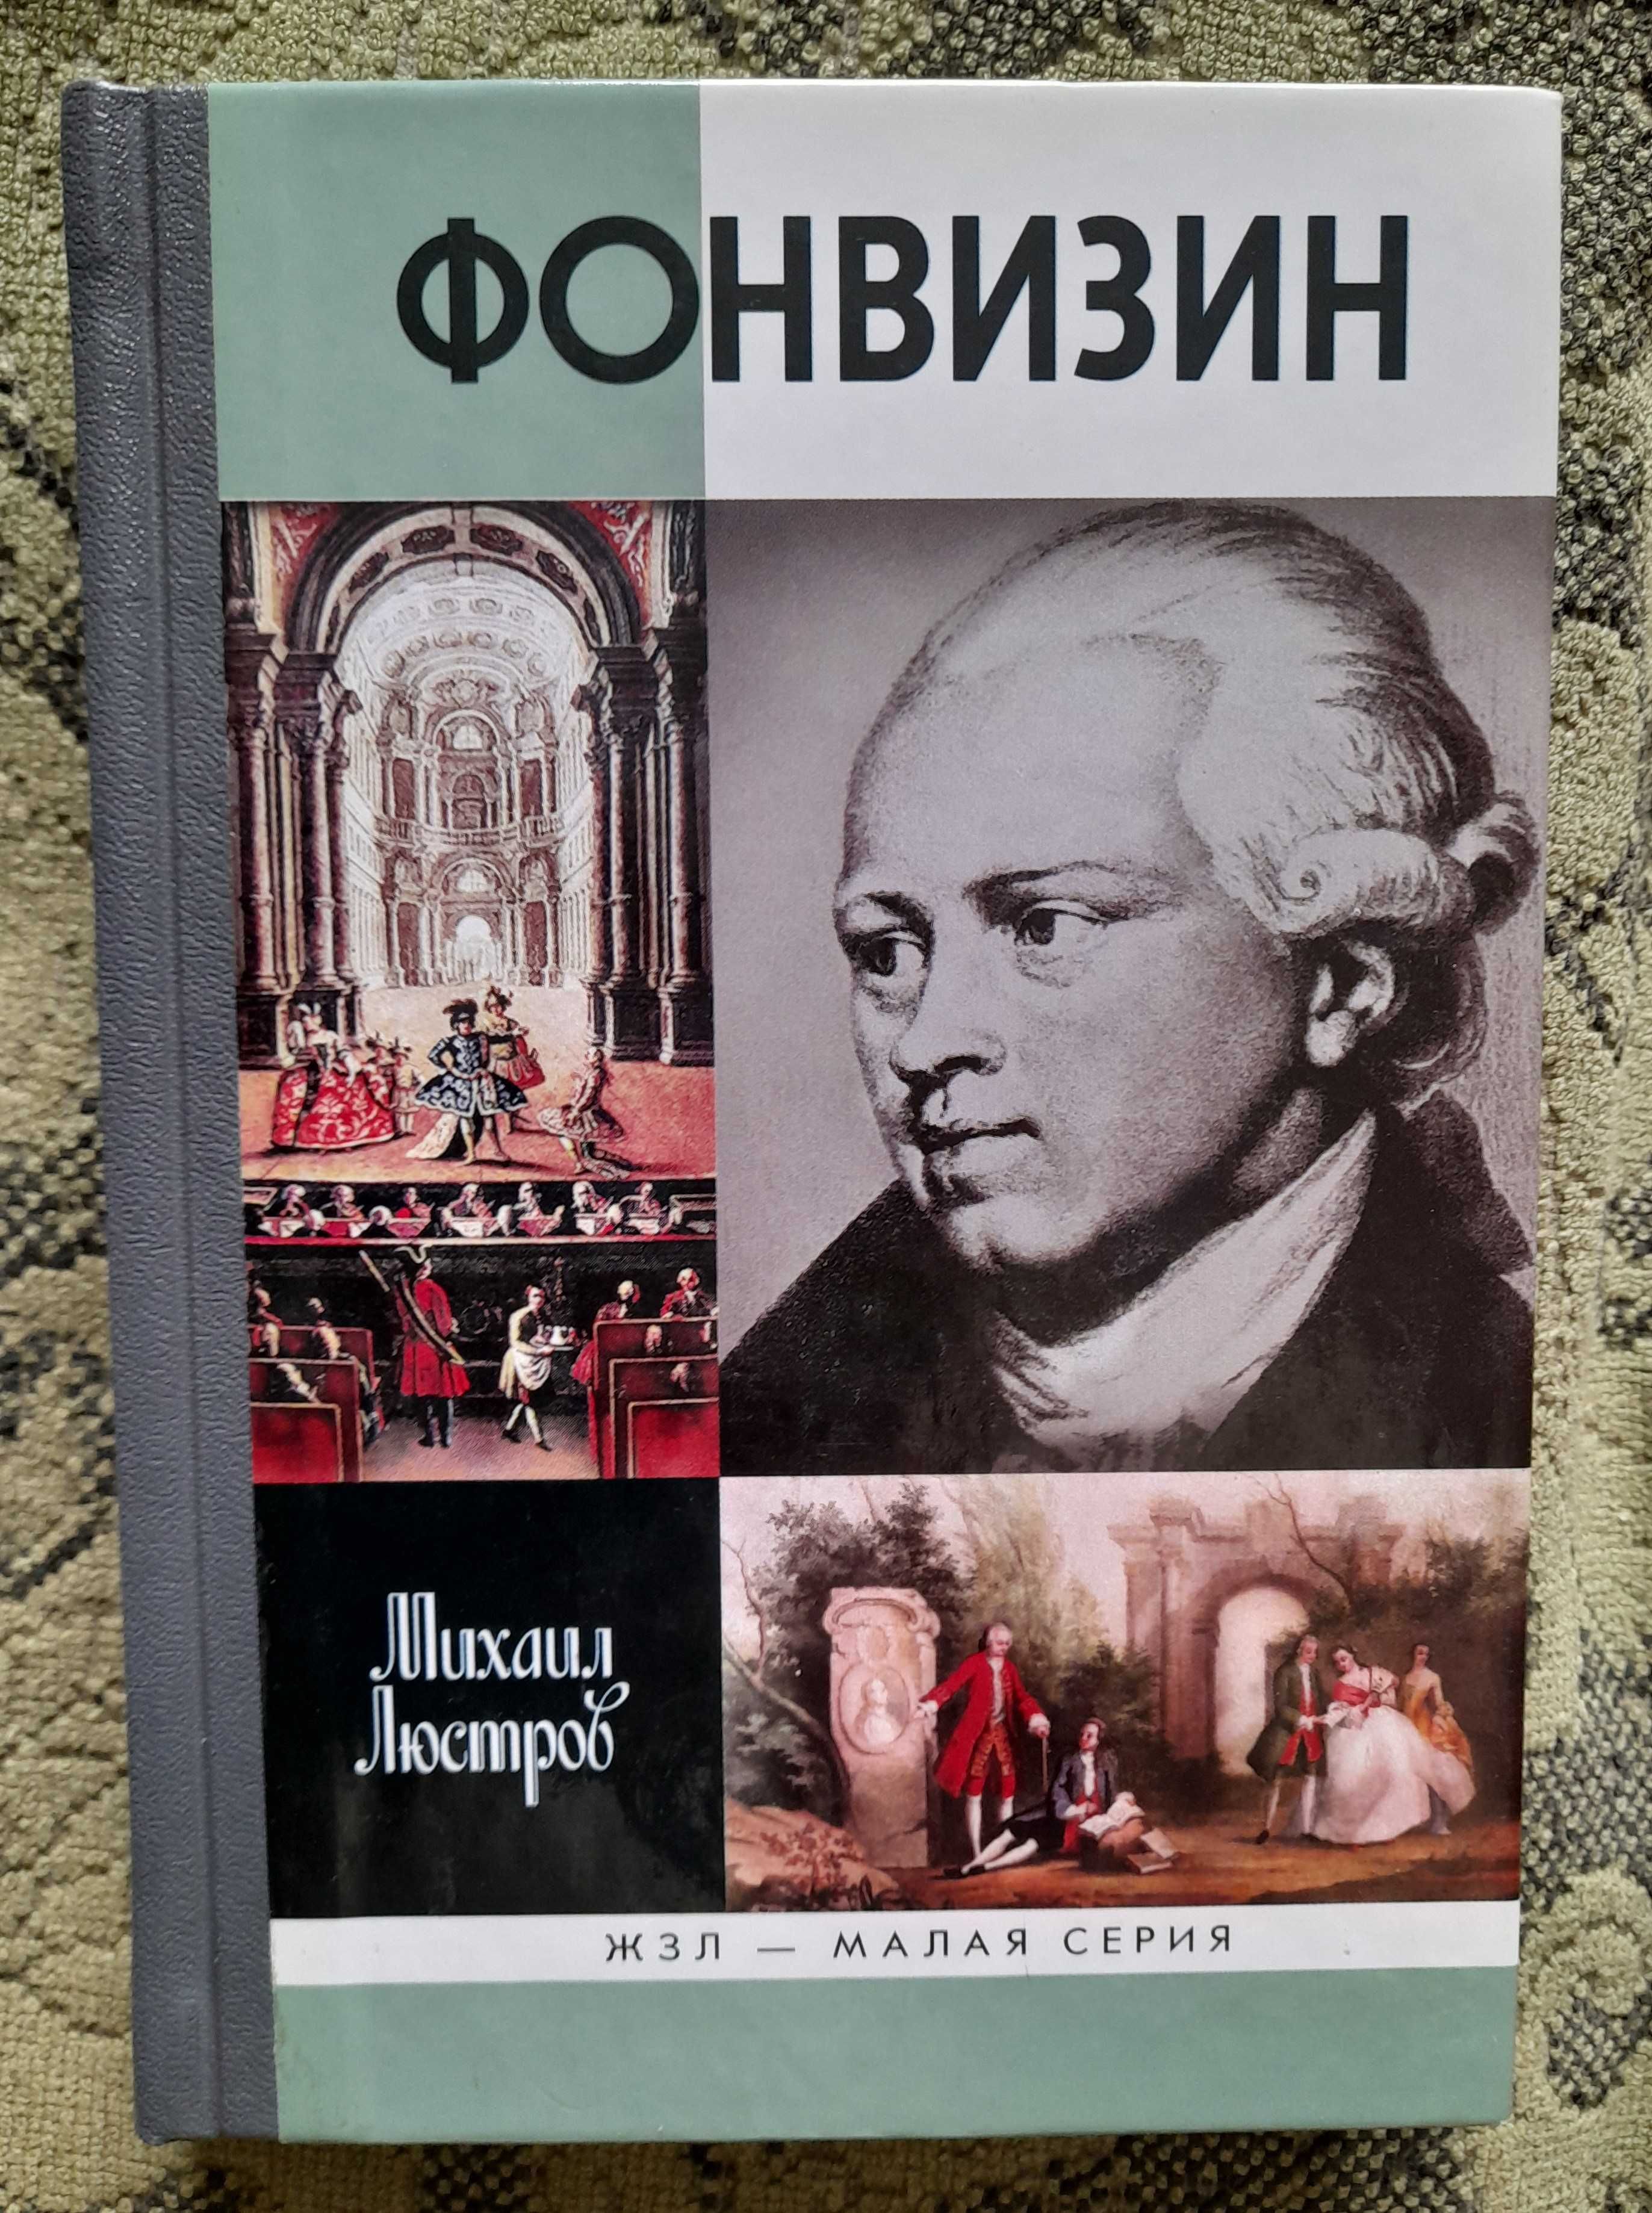 ЖЗЛ "Толстой, "Батюшков", "Фонвизин" (книги новые)